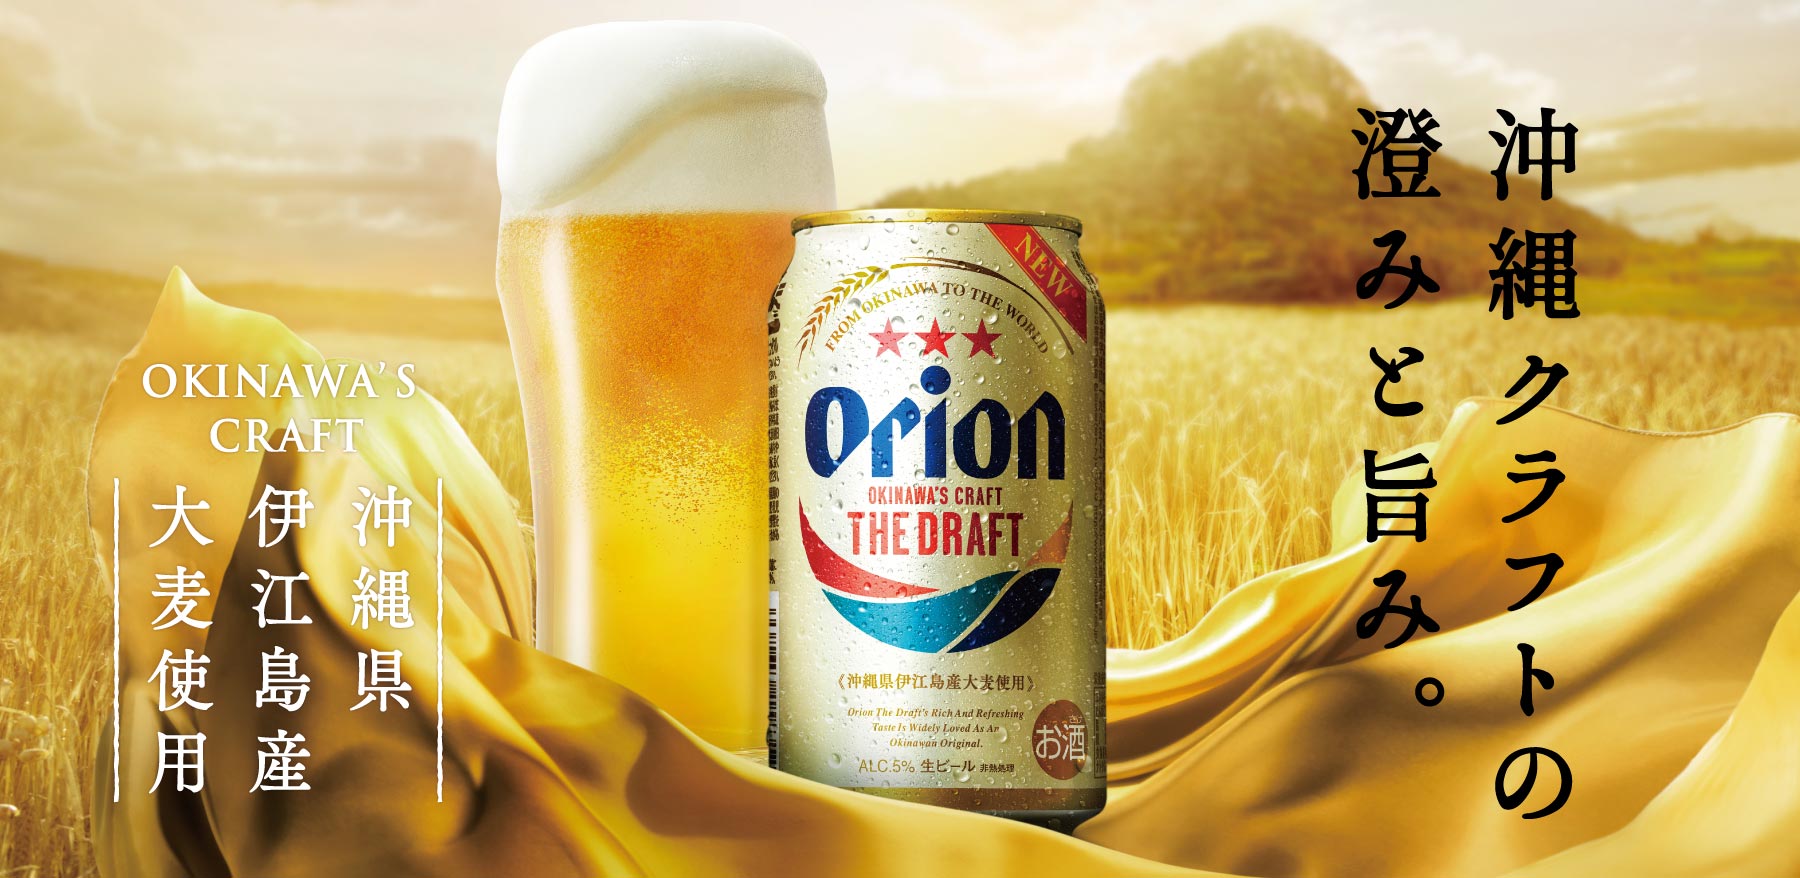 12131沖縄でしか造れないビールで、地域とともに資源循環型産業を目指す ―オリオンビール株式会社「オリオン ザ・ドラフト」―